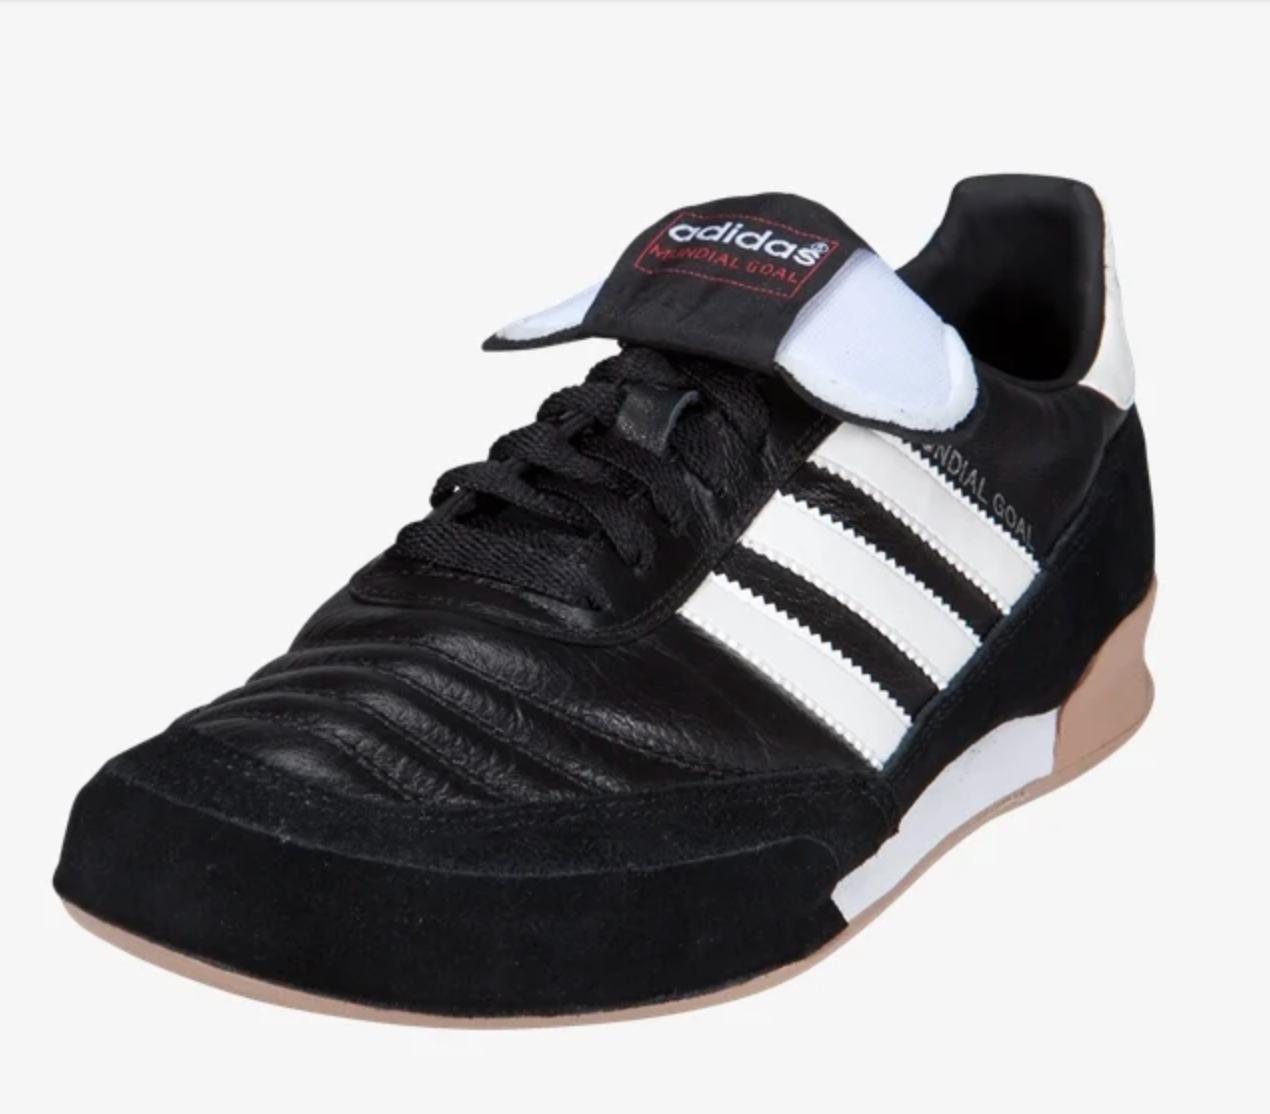 12 Best Indoor Soccer Shoes